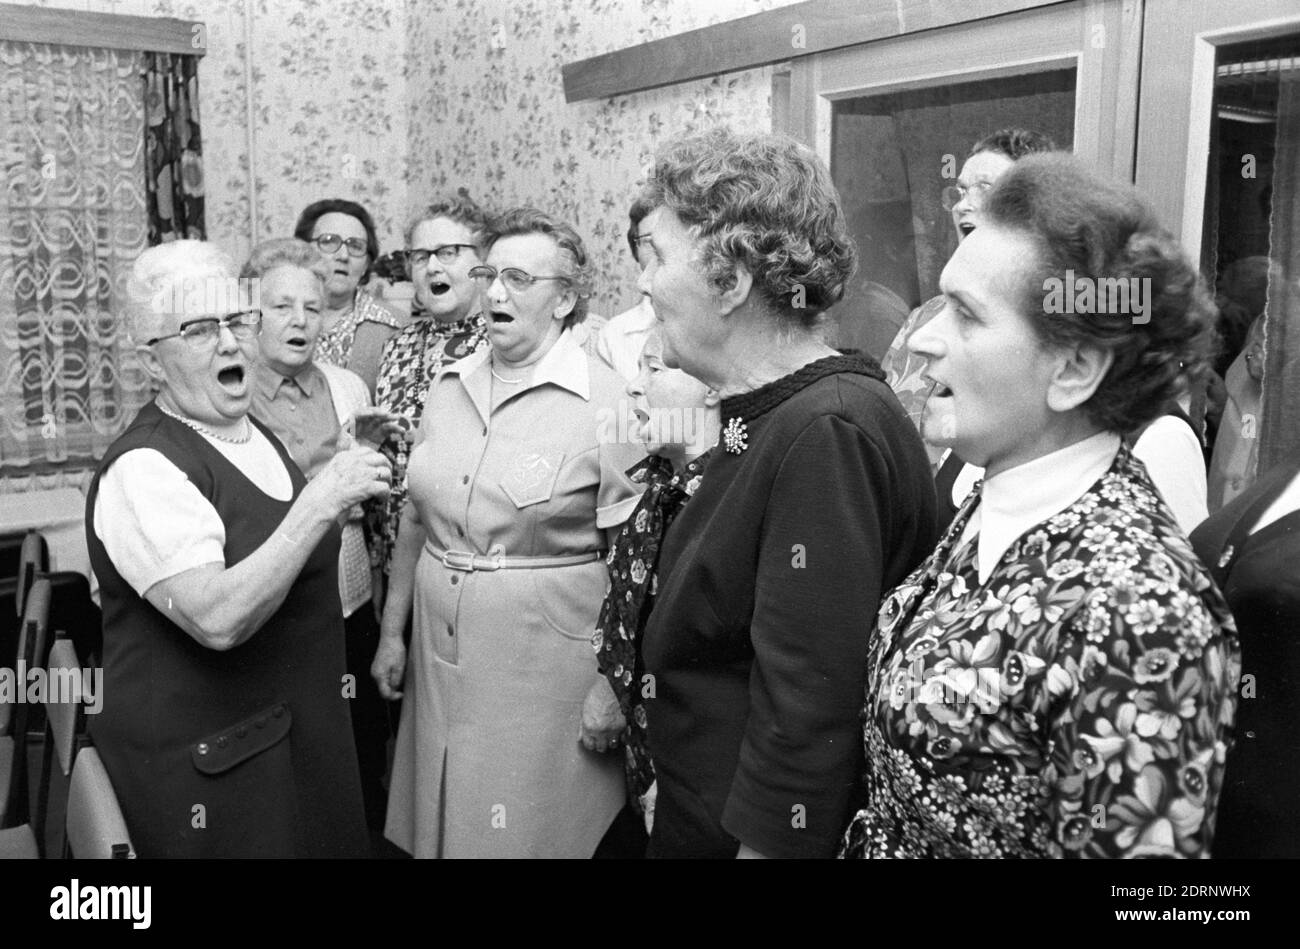 15 ottobre 1982, Sassonia, Eilenburg: Gli anziani cantano insieme nel coro dei pensionati Eilenburg all'inizio degli anni '80. Data esatta della registrazione non nota. Foto: Volkmar Heinz/dpa-Zentralbild/ZB Foto Stock